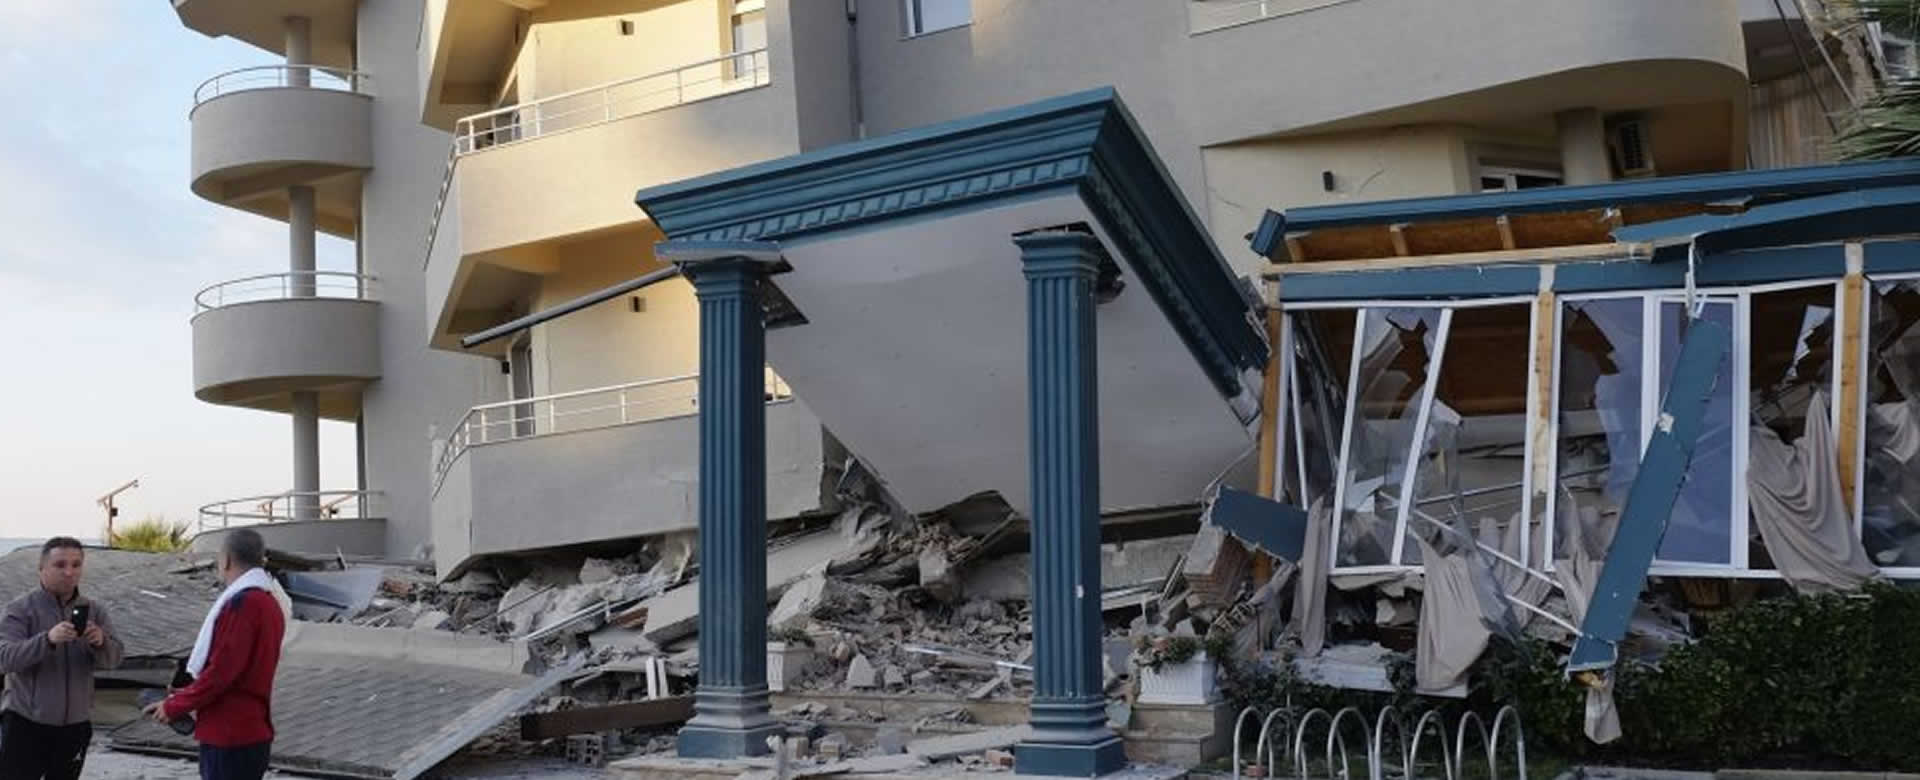 Asciende a más de 40 personas fallecidas por el fuerte sismo en Albania